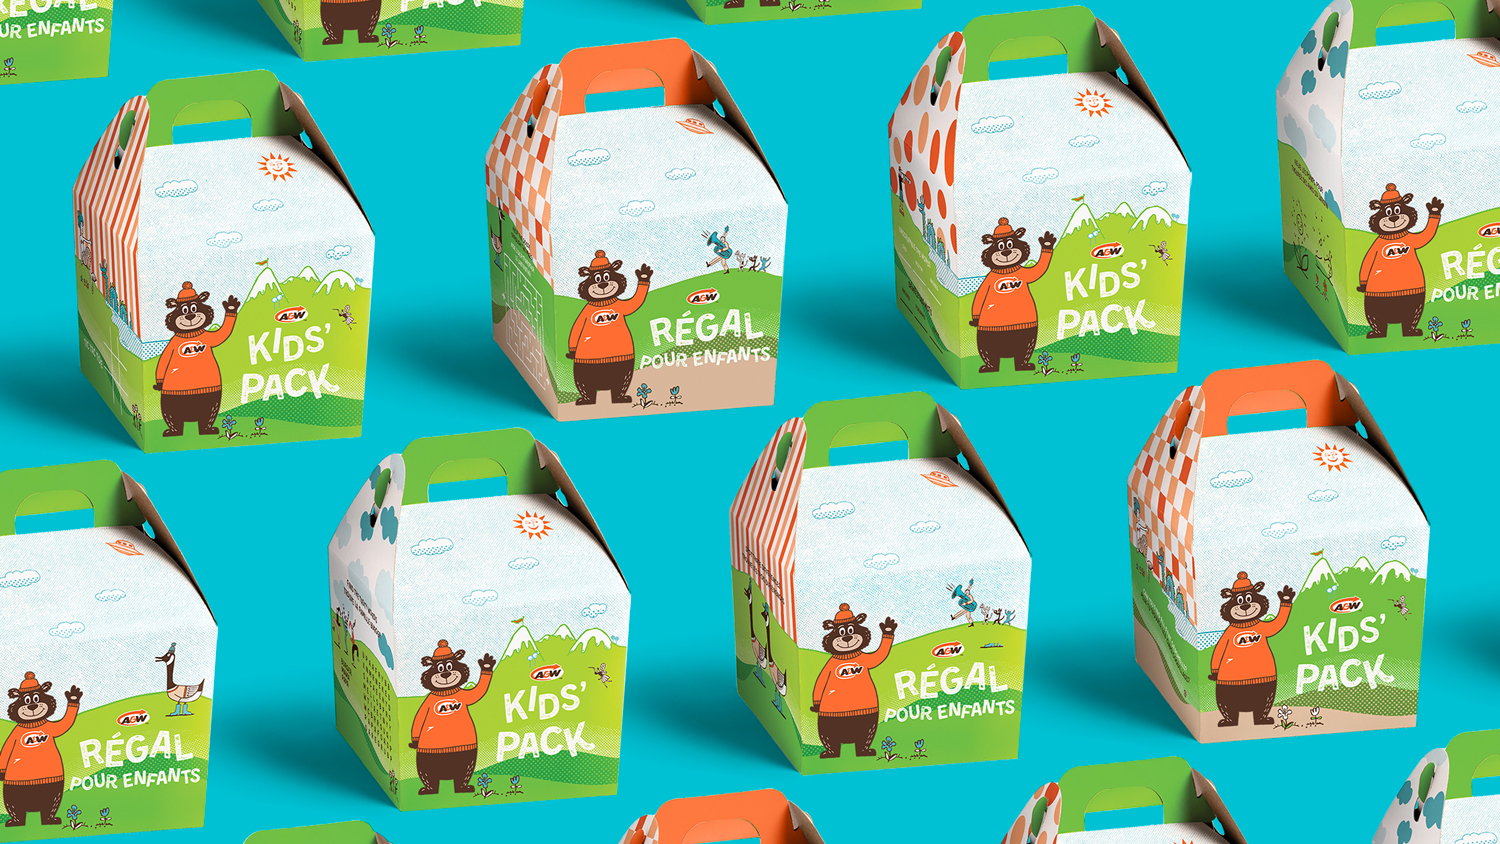 A&W Kids Pack Box Designs